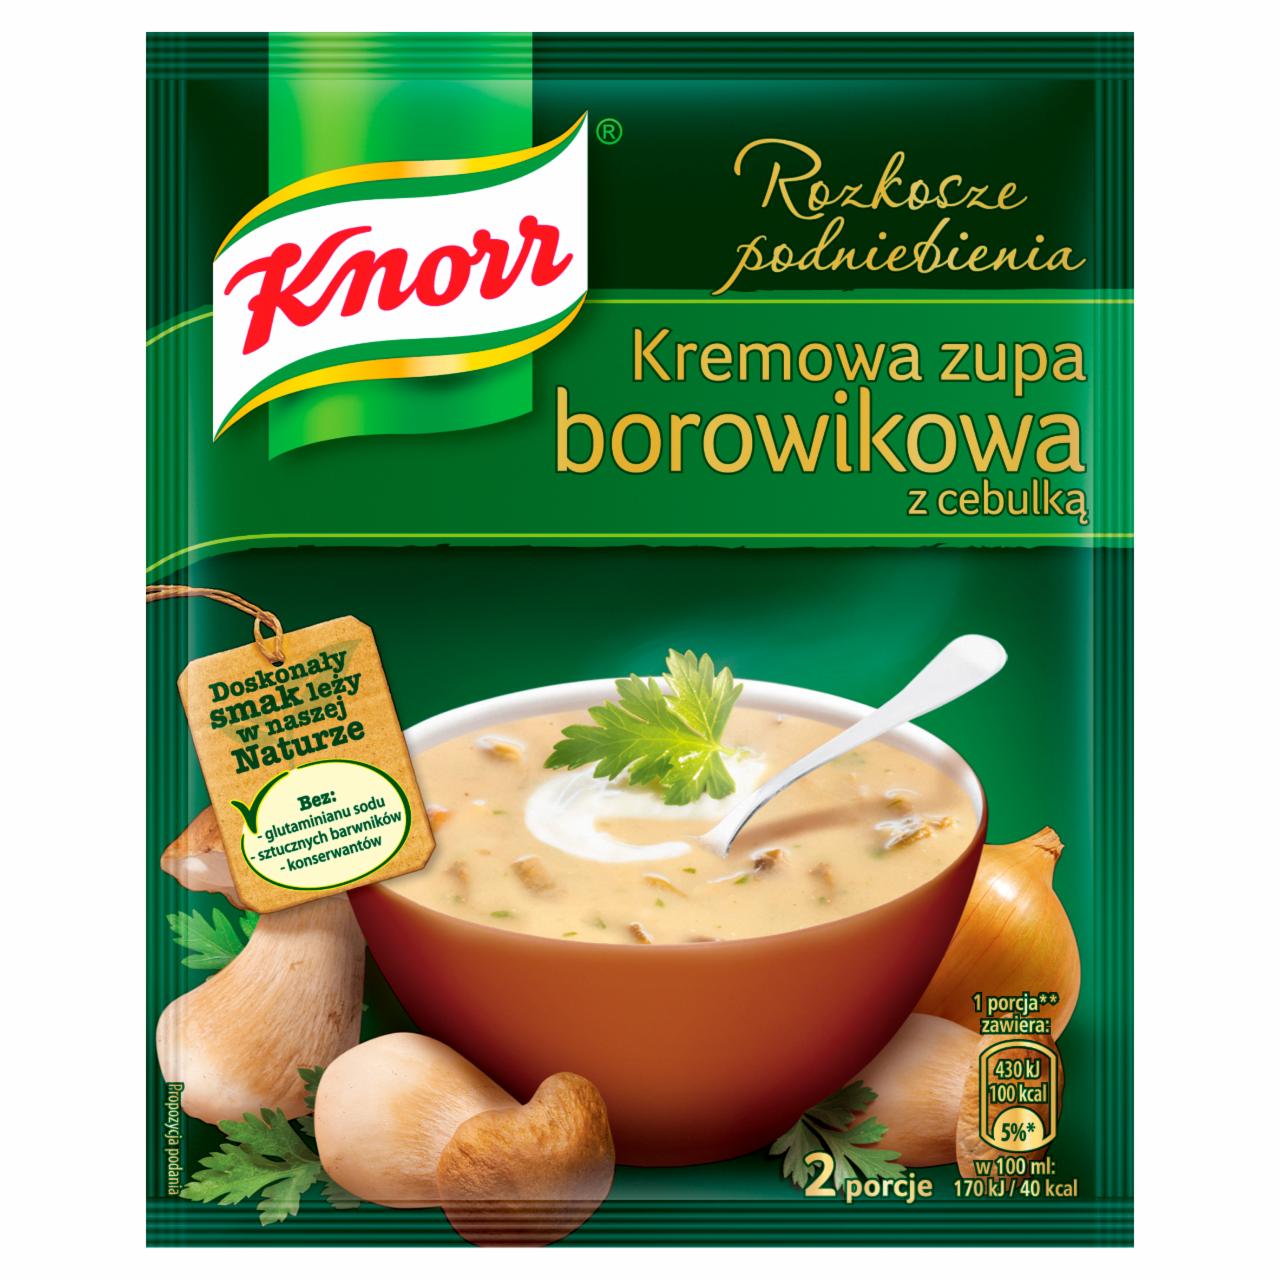 Zdjęcia - Knorr Rozkosze podniebienia Kremowa zupa borowikowa z cebulką 50 g